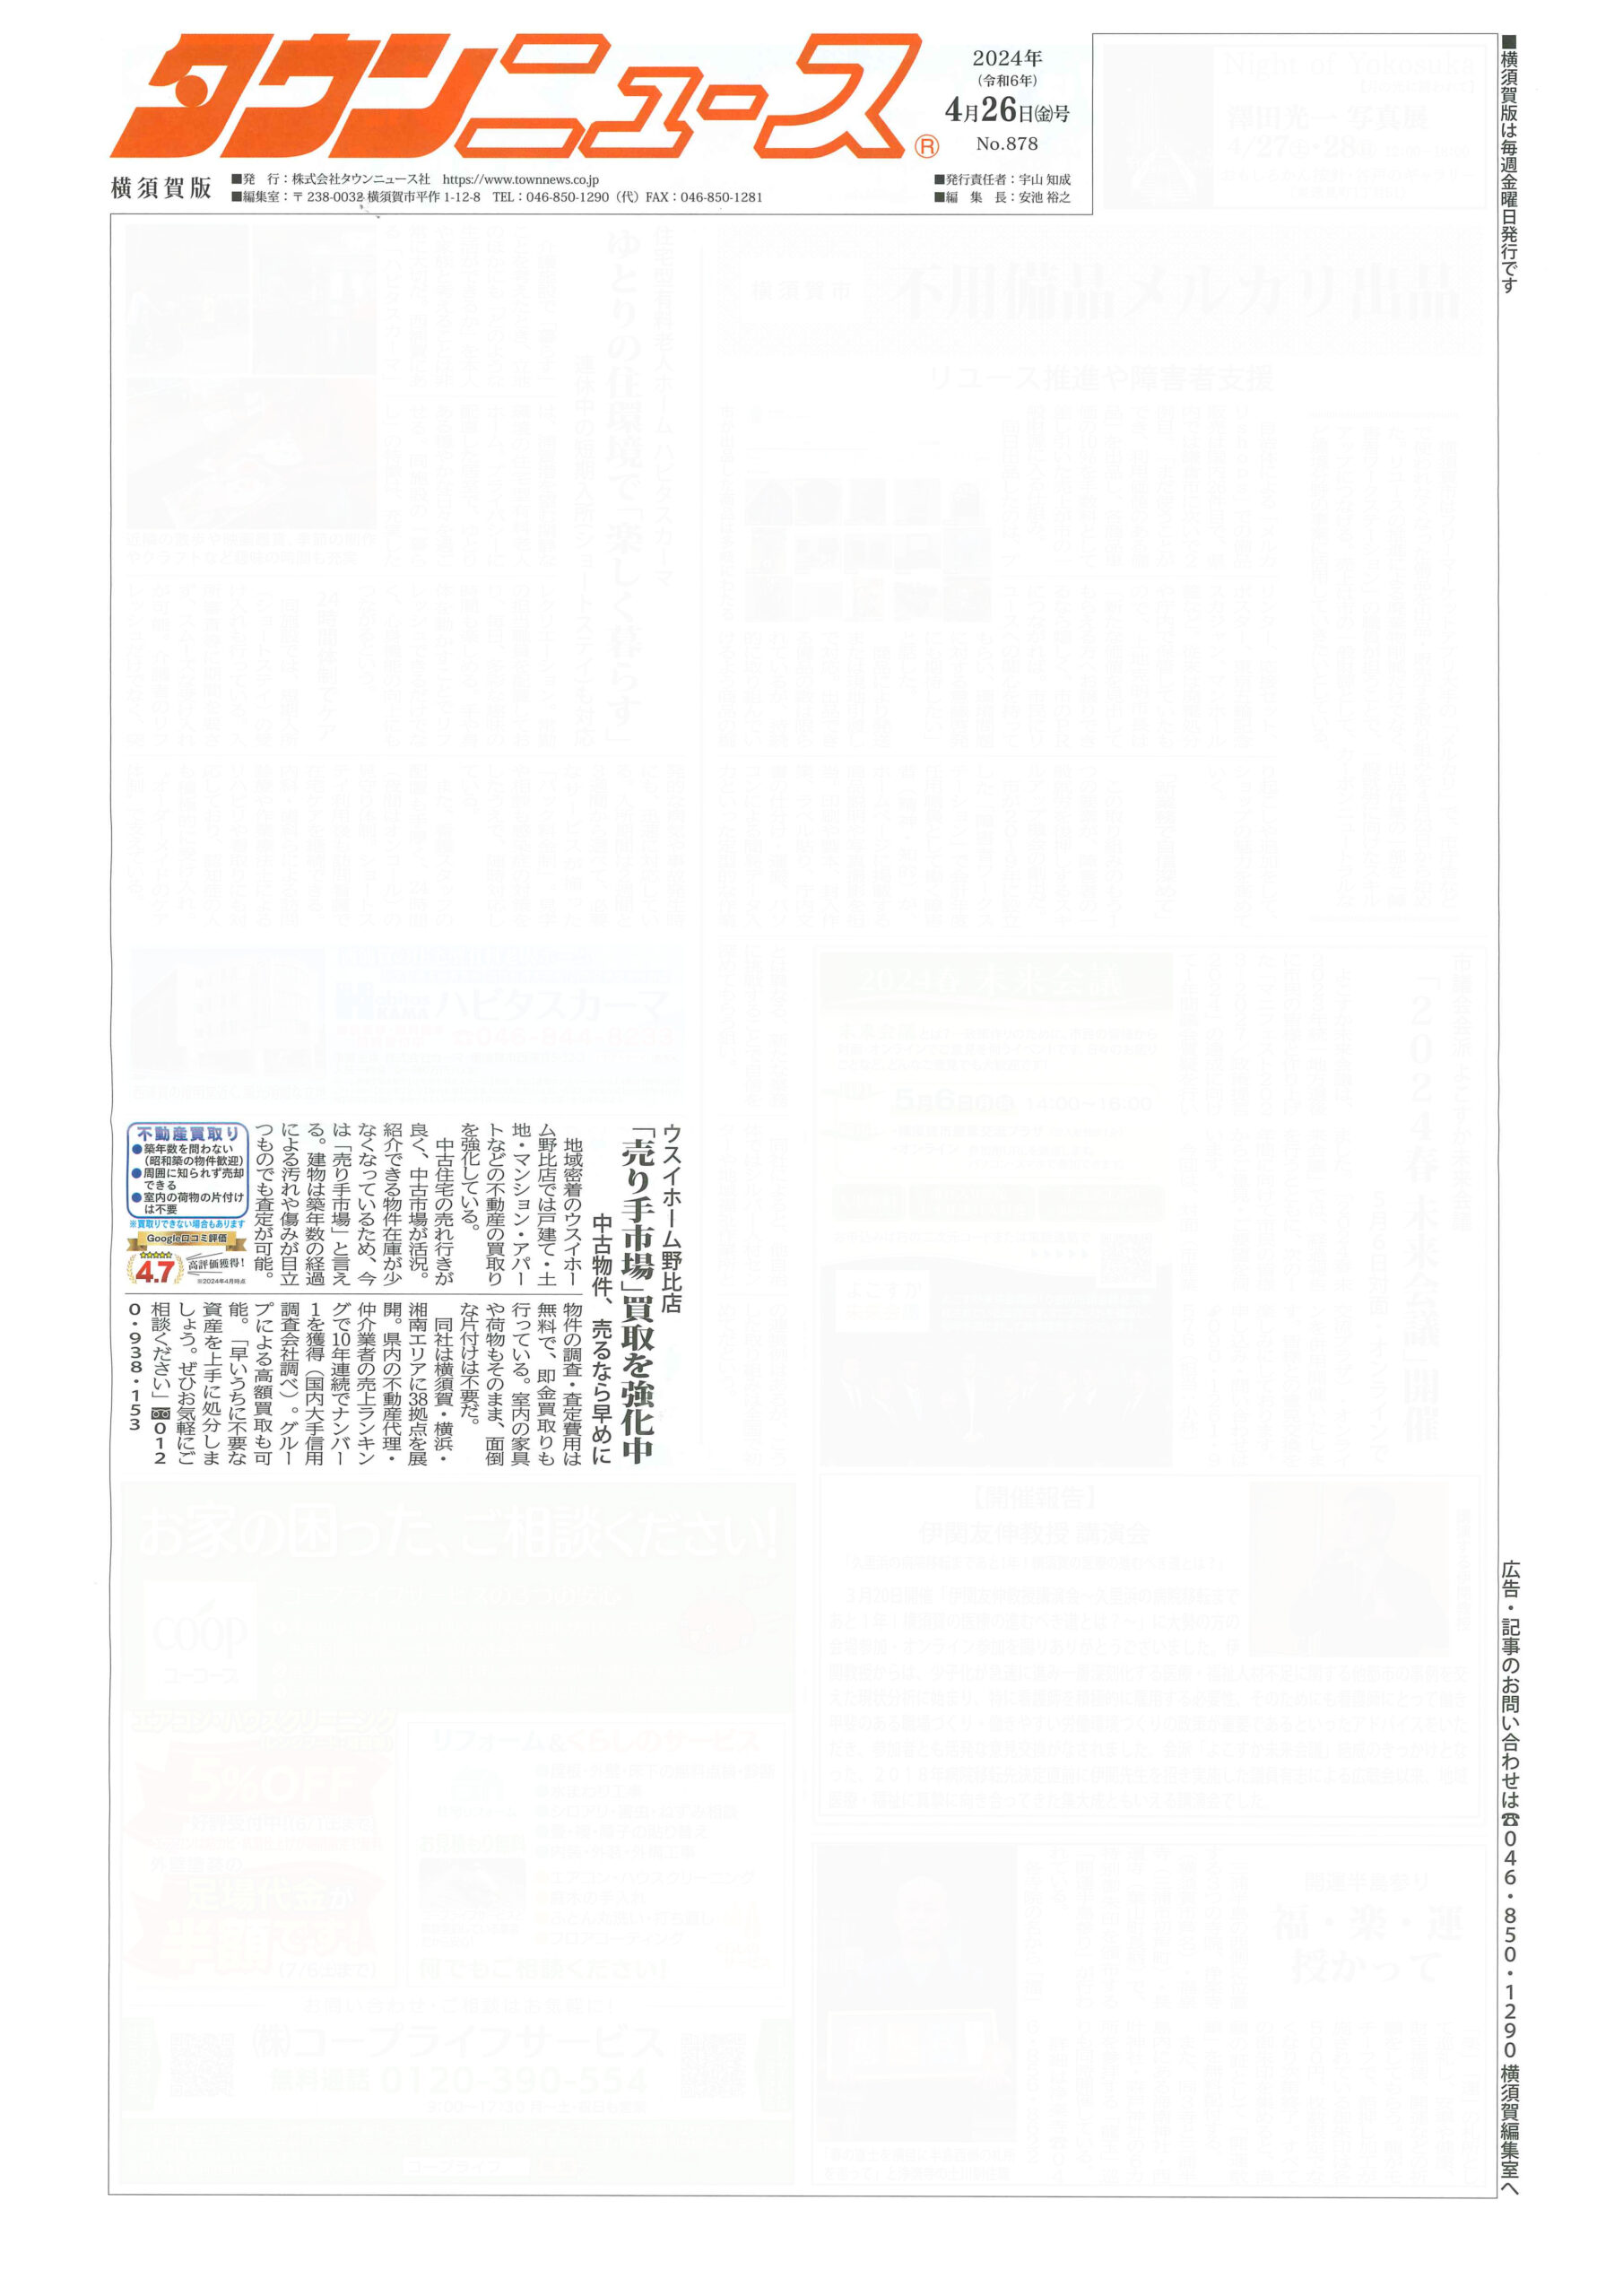 2024.04.26_タウンニュース横須賀版_ウスイホーム野比店_不動産買取